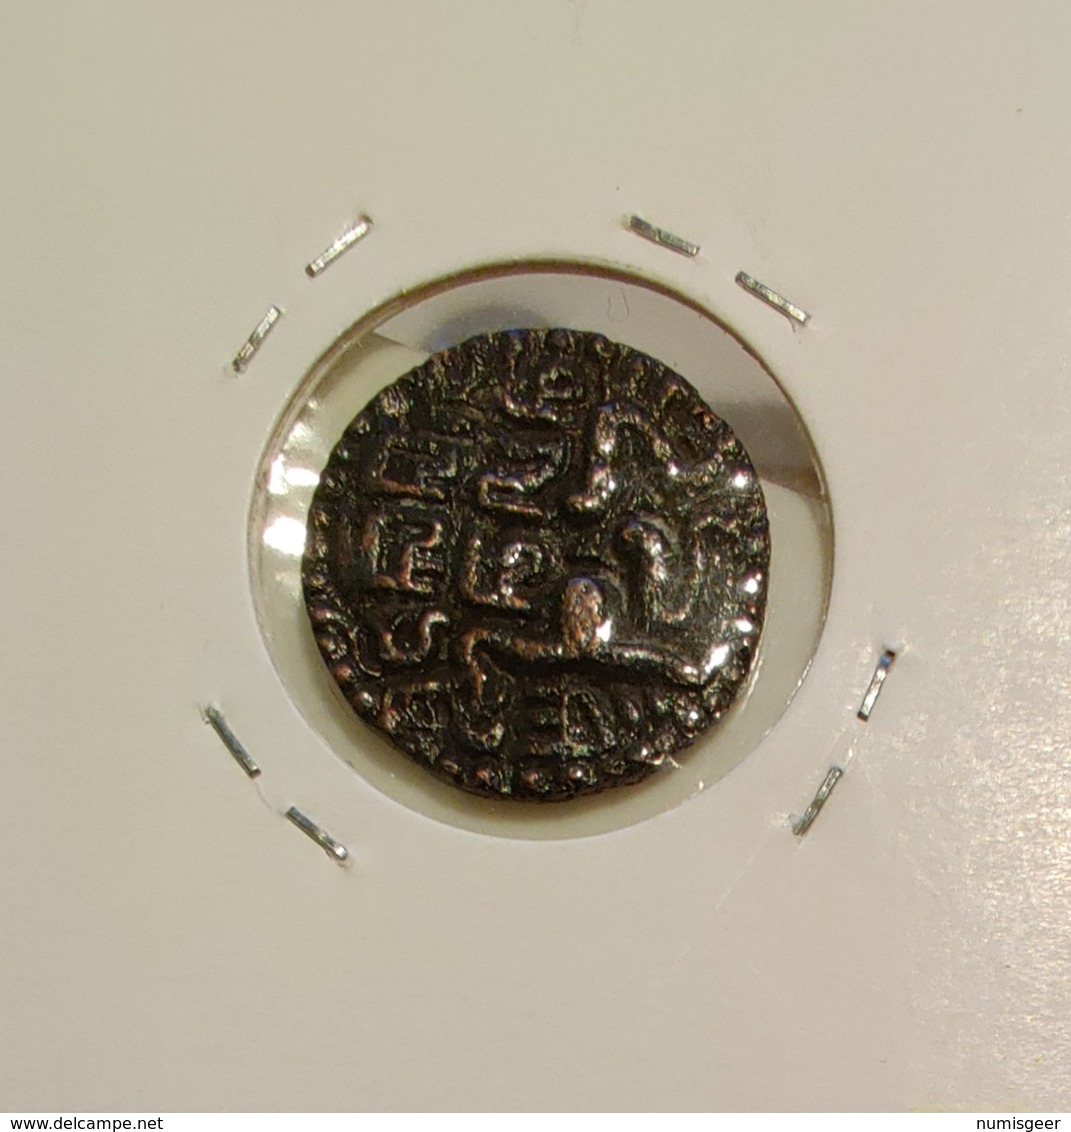 SRI LANKA  -- CEYLON  - 1 KAHAVANU  ( Massa ) ( Dynastien 840-1295 ) 2 SCANS - Sri Lanka